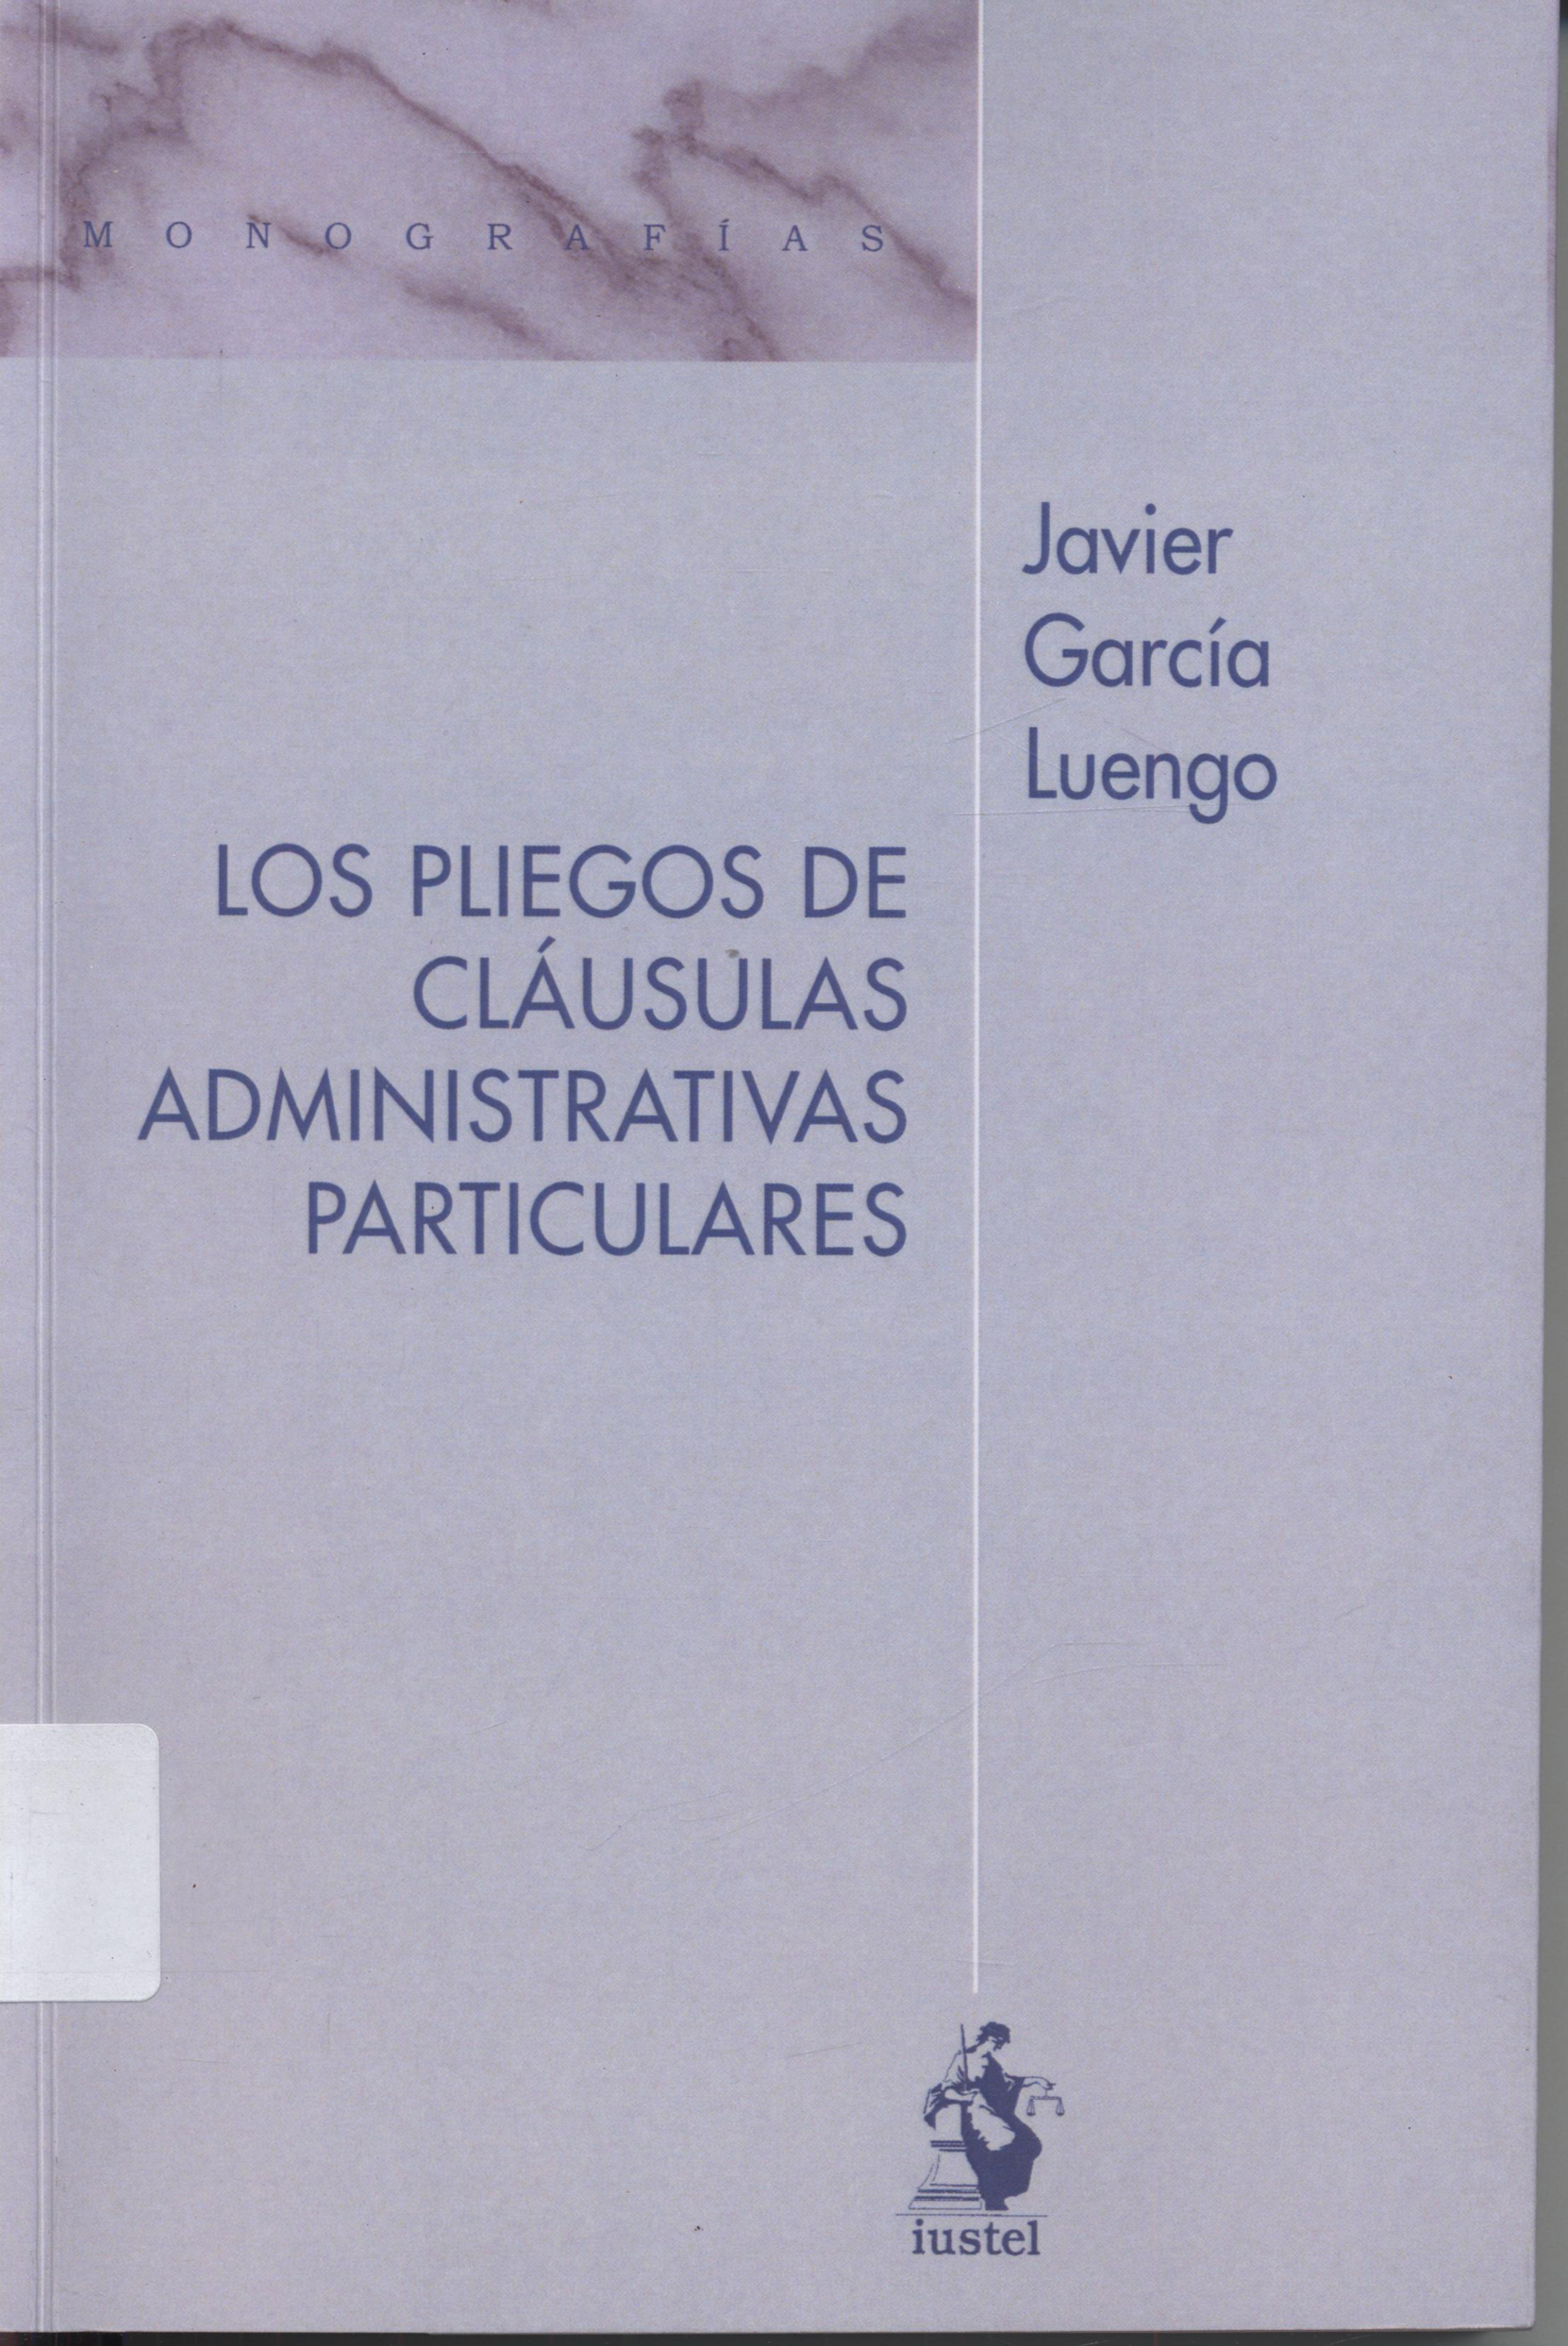 Imagen de portada del libro Los pliegos de cláusulas administrativas particulares